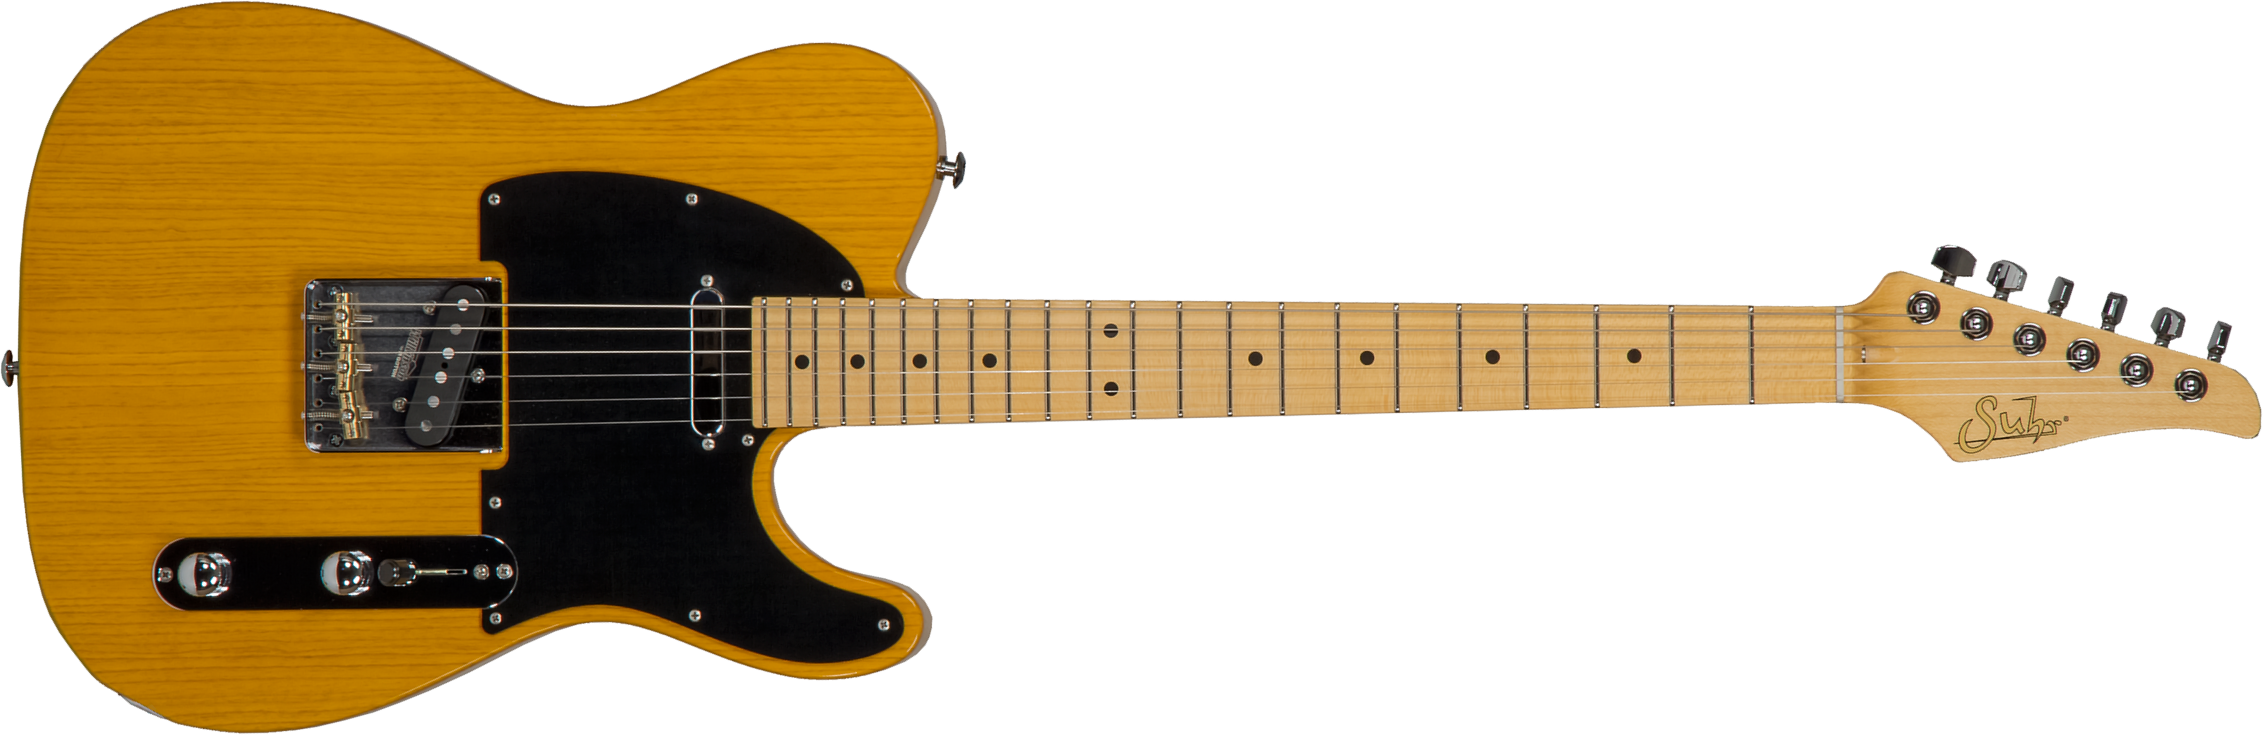 Suhr Classic T Antique 01-cta-0026 2s  Ht Mn #70402 - Light Aging Trans Butterscotch - Televorm elektrische gitaar - Main picture